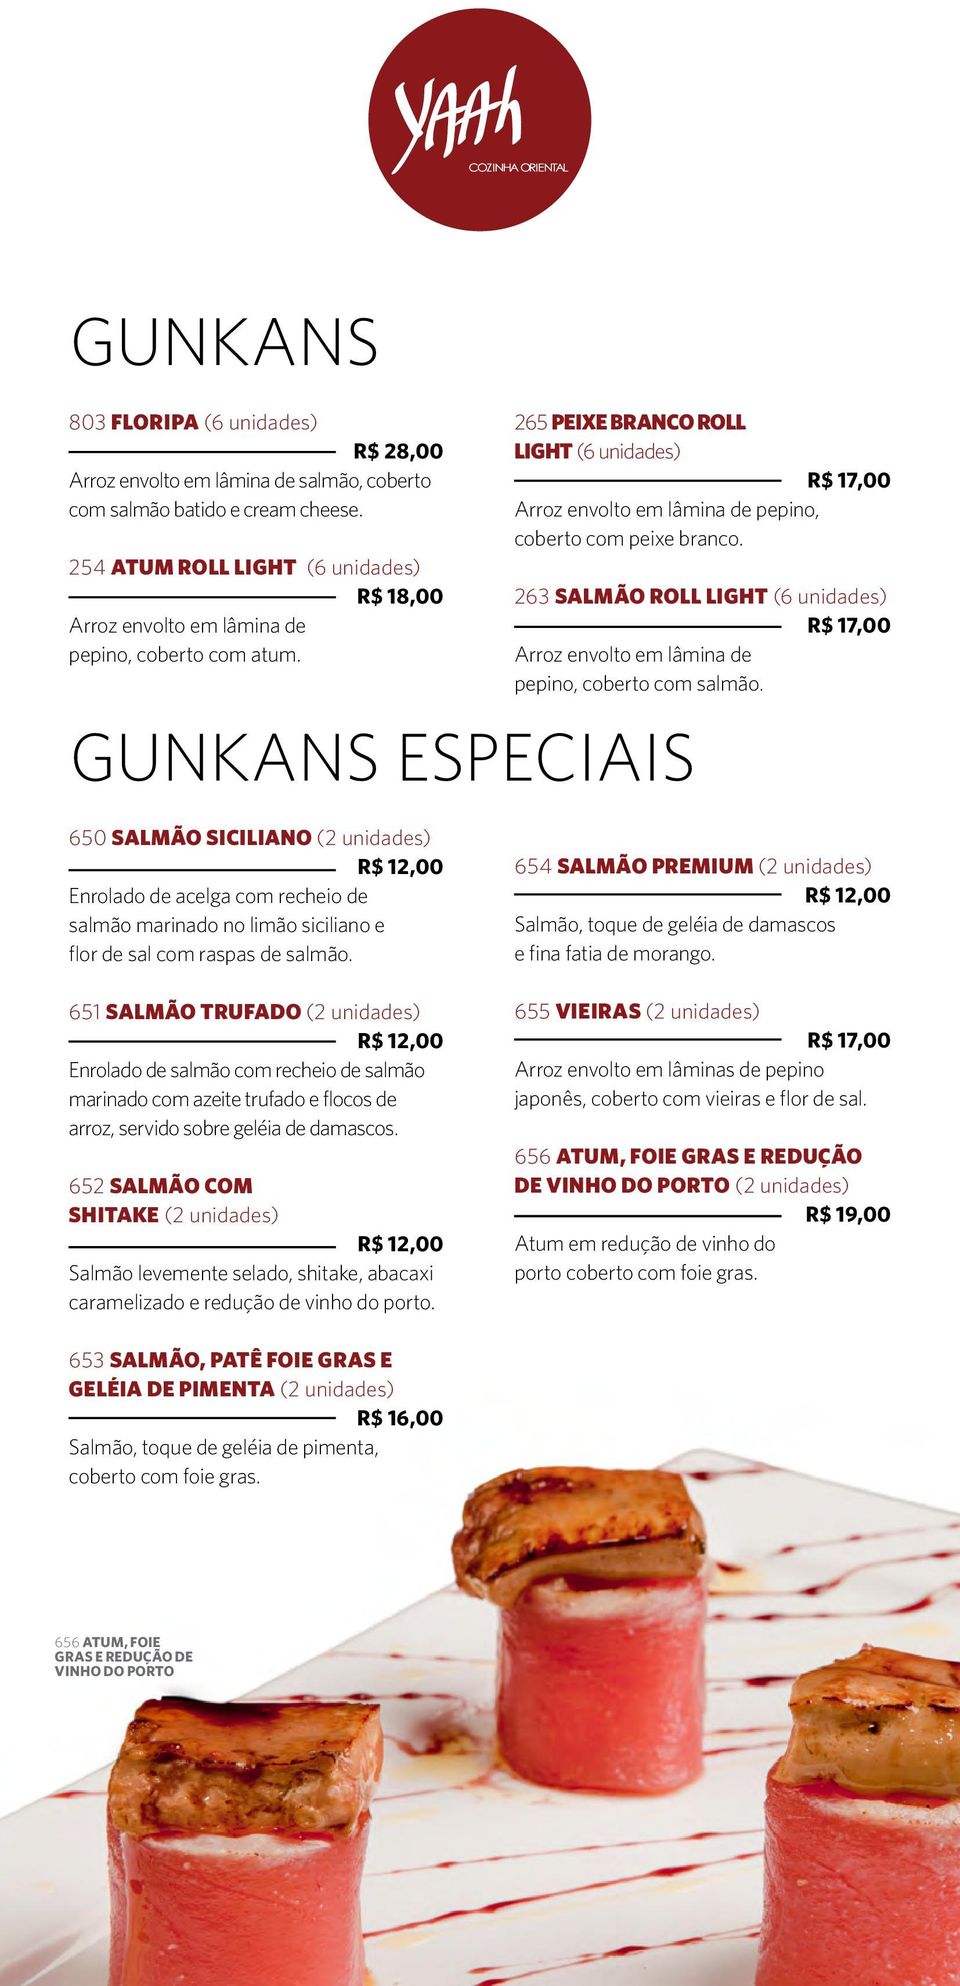 gunkans especiais 265 PEIXE BRANCO ROLL LIGHT (6 unidades) Arroz envolto em lâmina de pepino, coberto com peixe branco.